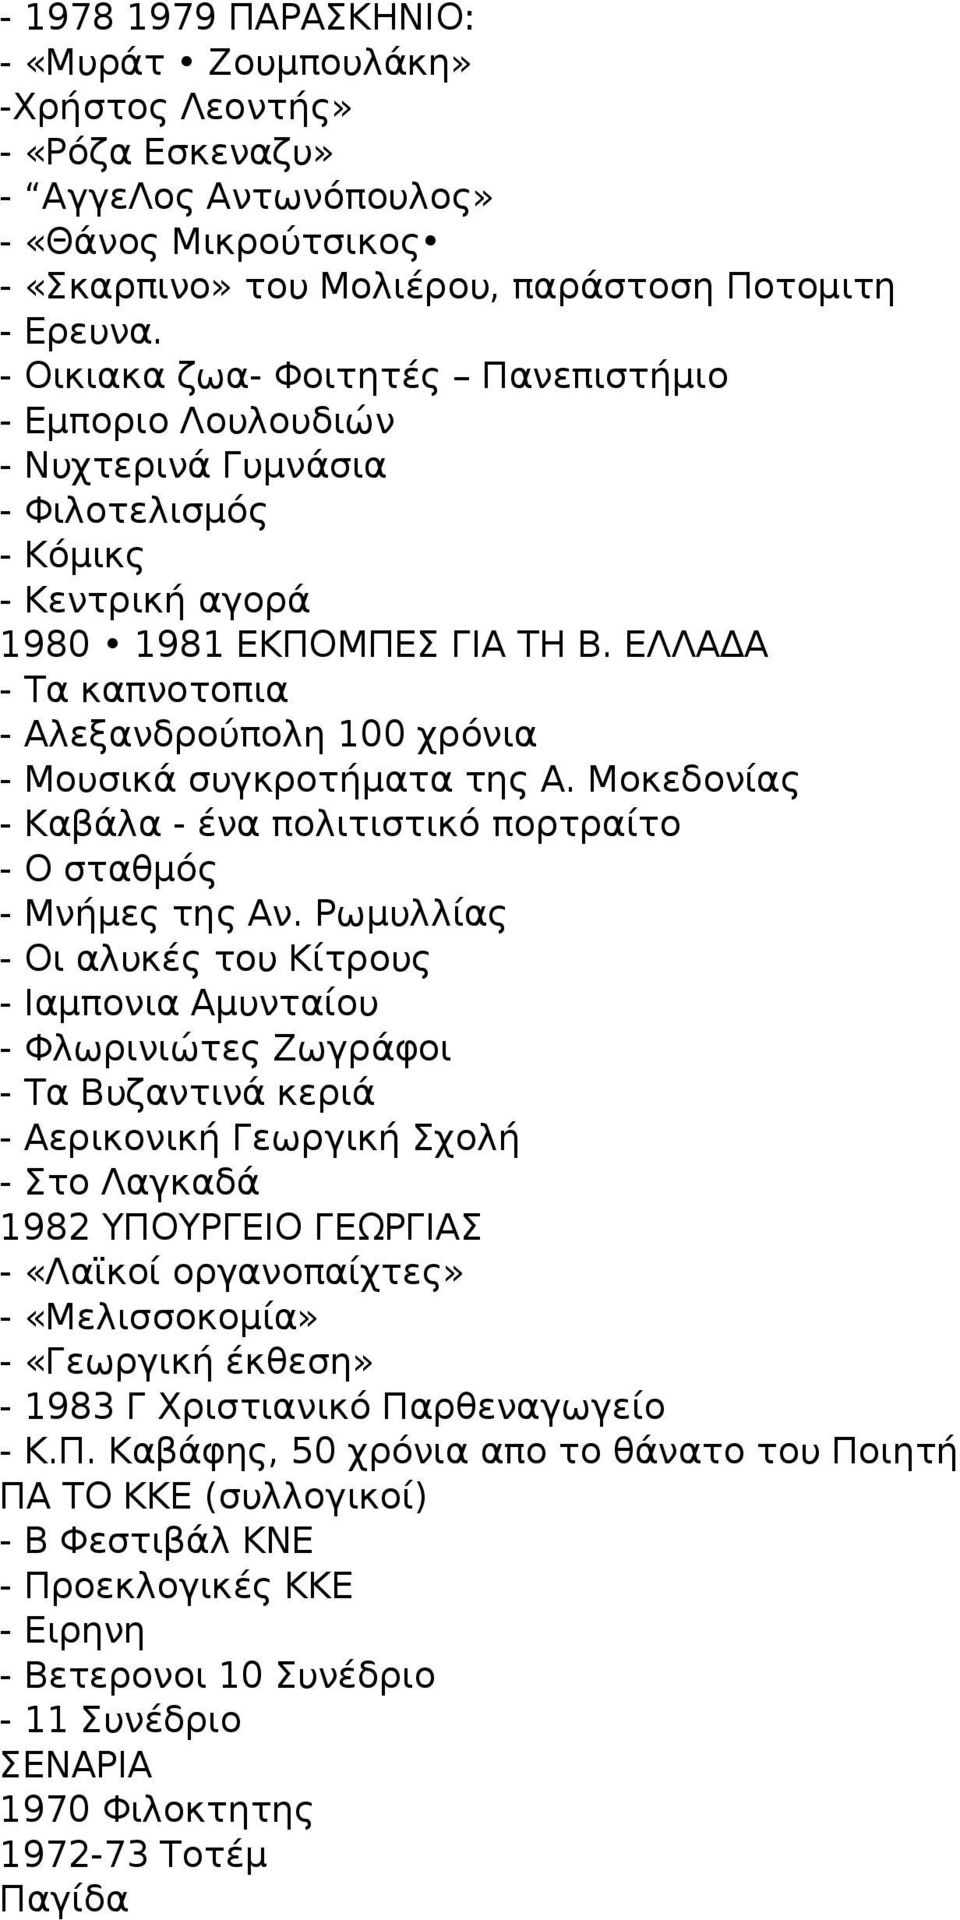 ΕΛΛΑΔΑ - Τα καπνοτοπια - Αλεξανδρούπολη 100 χρόνια - Μουσικά συγκροτήματα της Α. Μοκεδονίας - Καβάλα - ένα πολιτιστικό πορτραίτο - Ο σταθμός - Μνήμες της Αν.